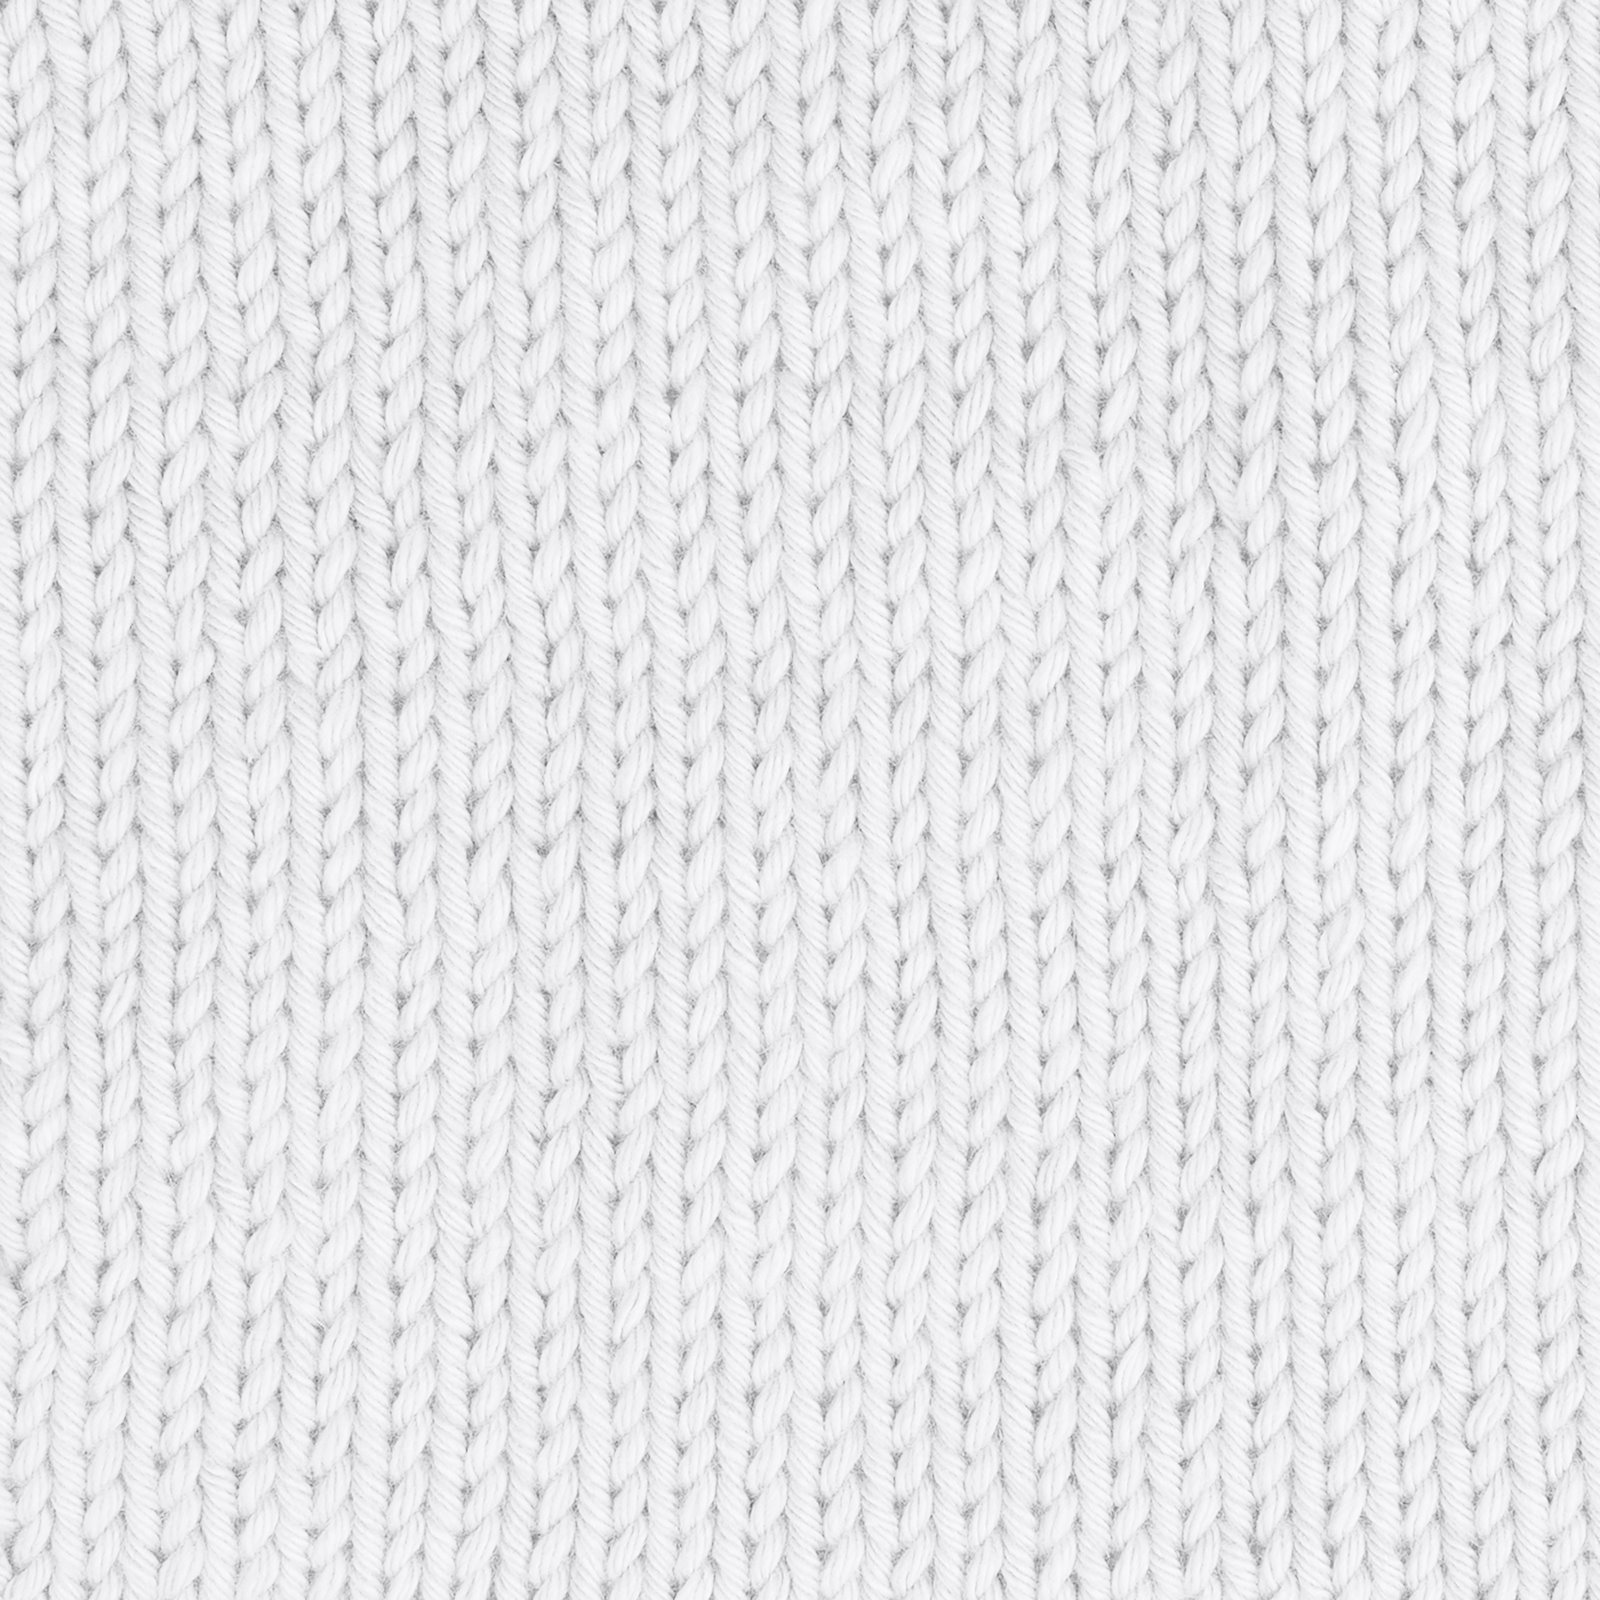 FRAYA, 100% cotton yarn "Honest", white 90061001_sskit